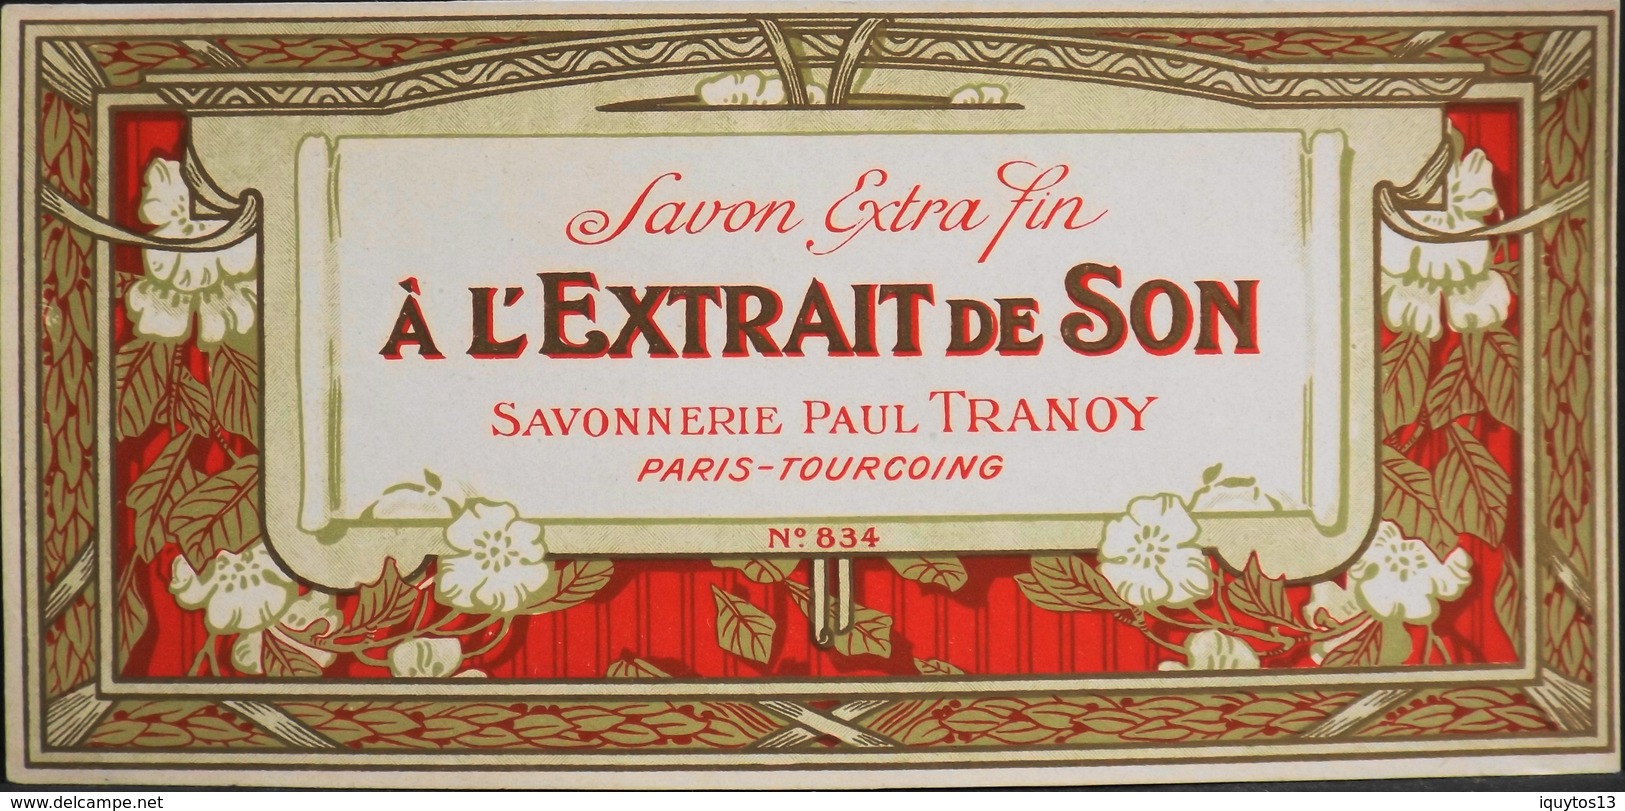 ETIQUETTE ANCIENNE - SAVON EXTRA-FIN  à L'Extrait De Son N° 834 - Paul TRANOY - Paris - En Très Bon Etat - Etiquettes